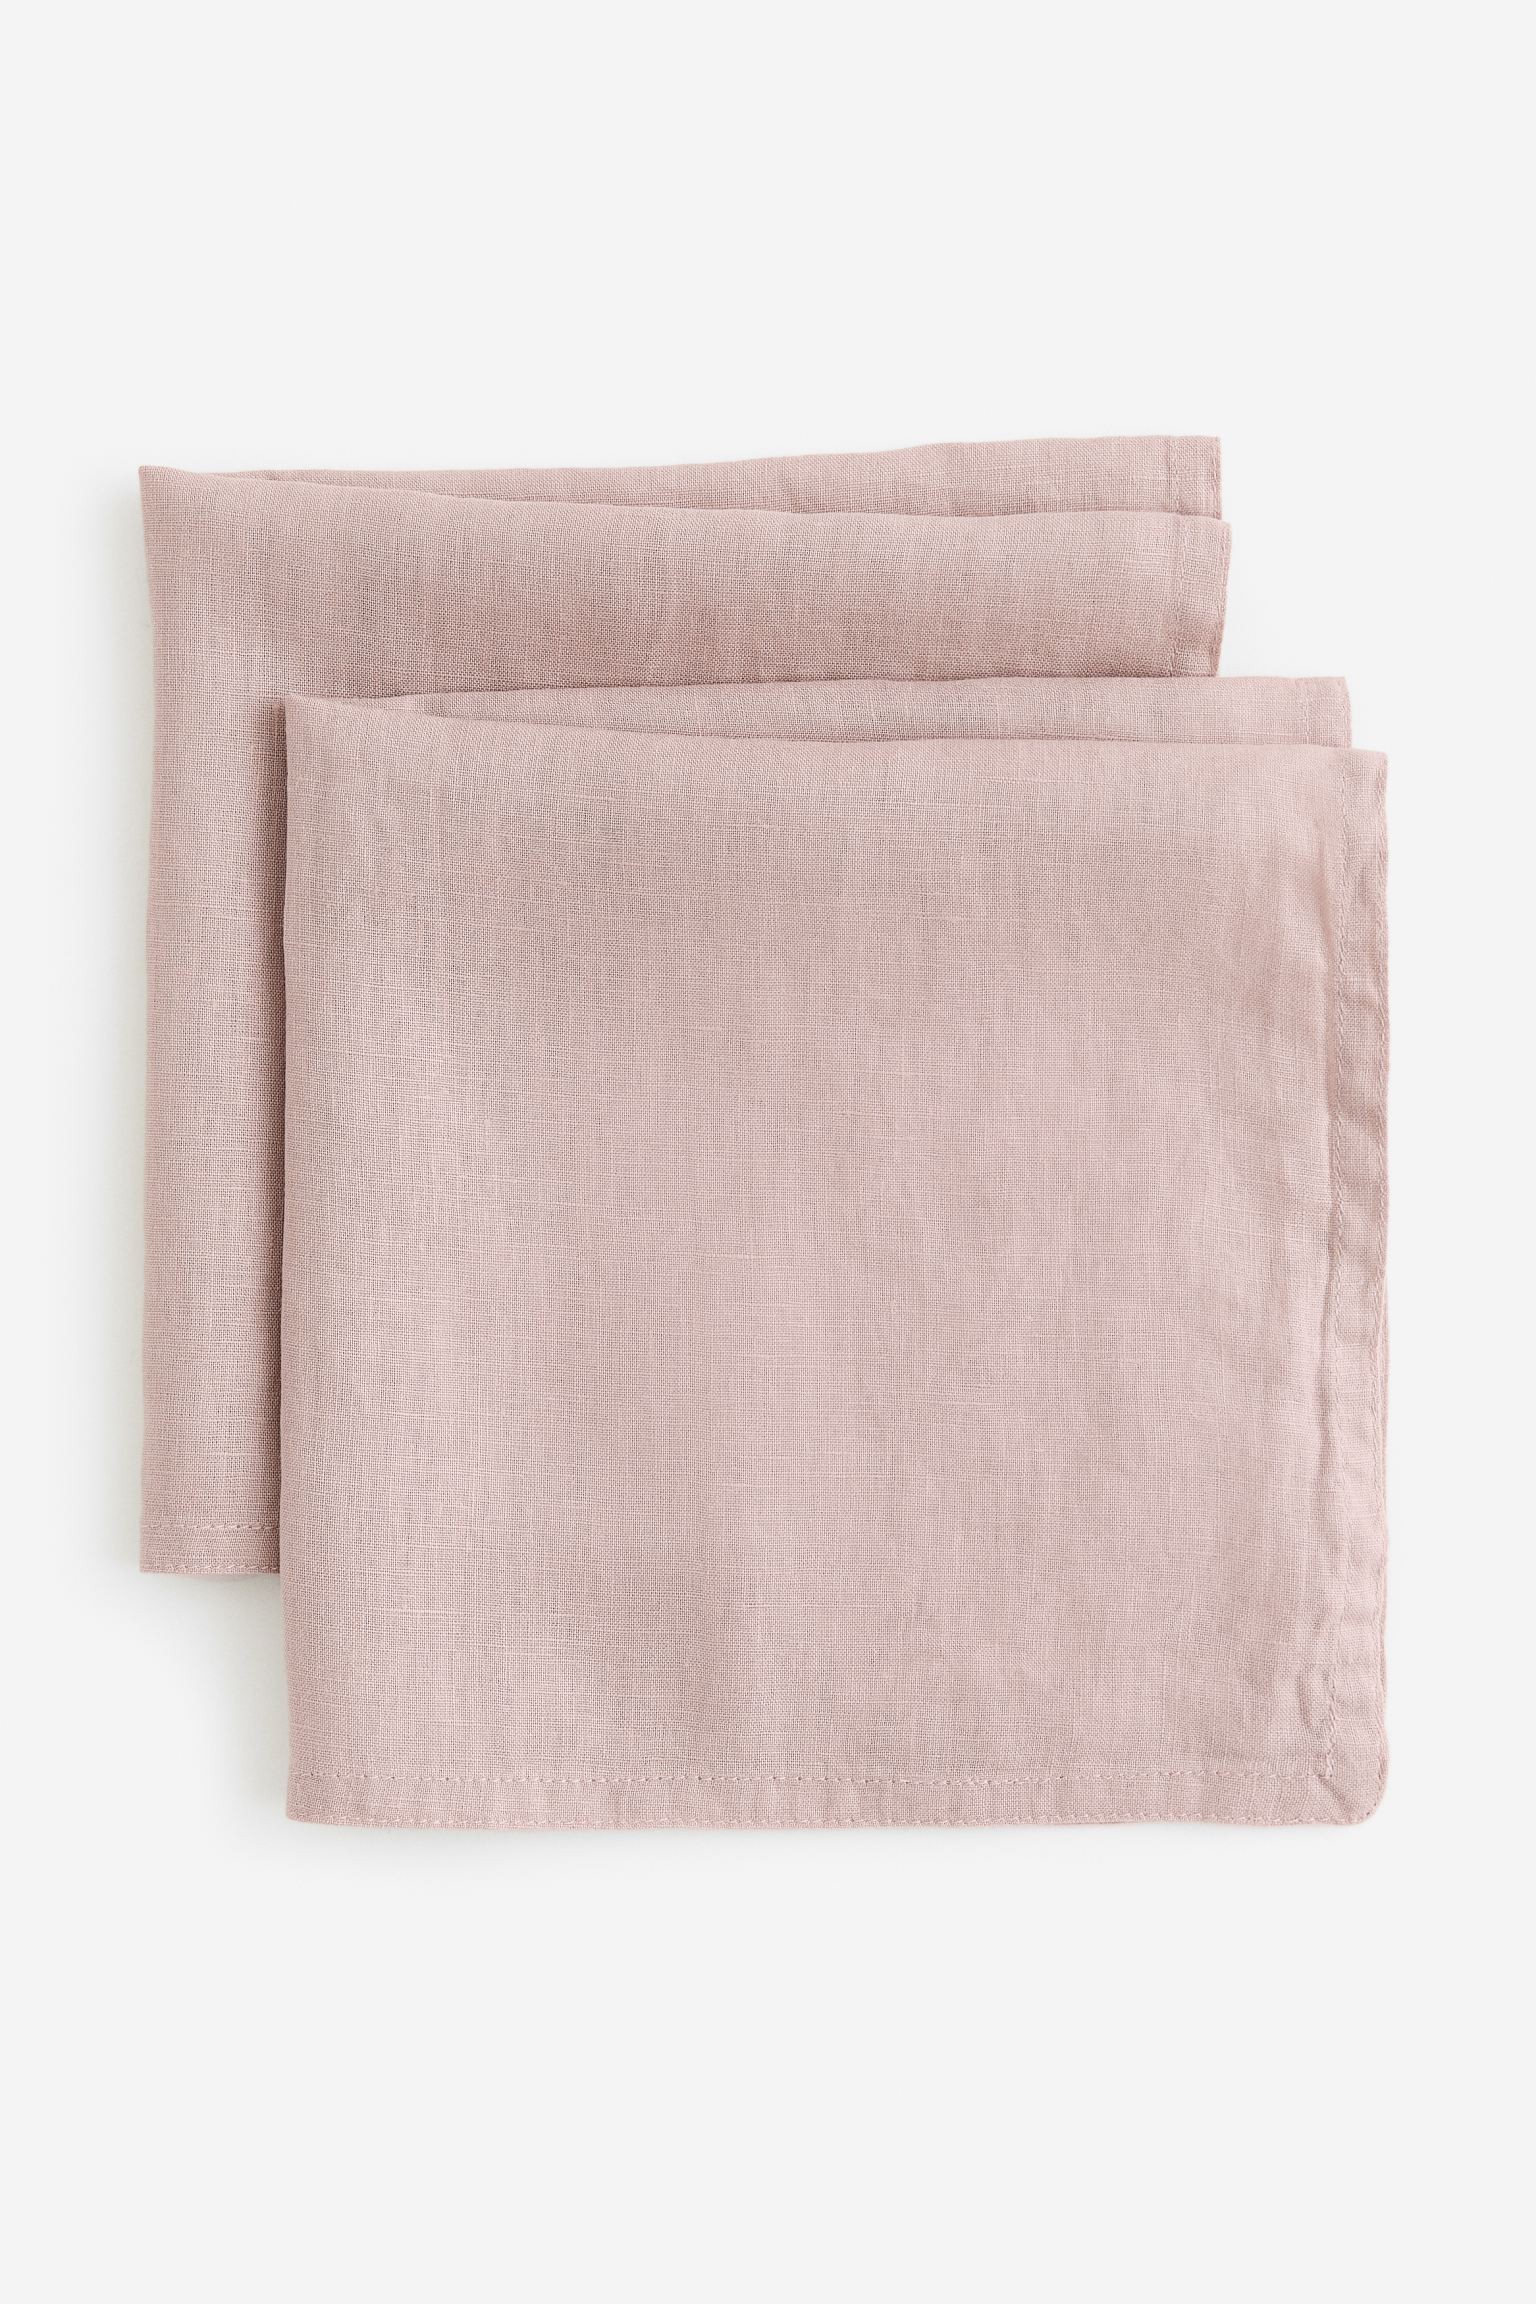 H&M Home Серветки лляні, 2 шт., Світло-рожевий бежевий, 45x45 0902500020 0902500020